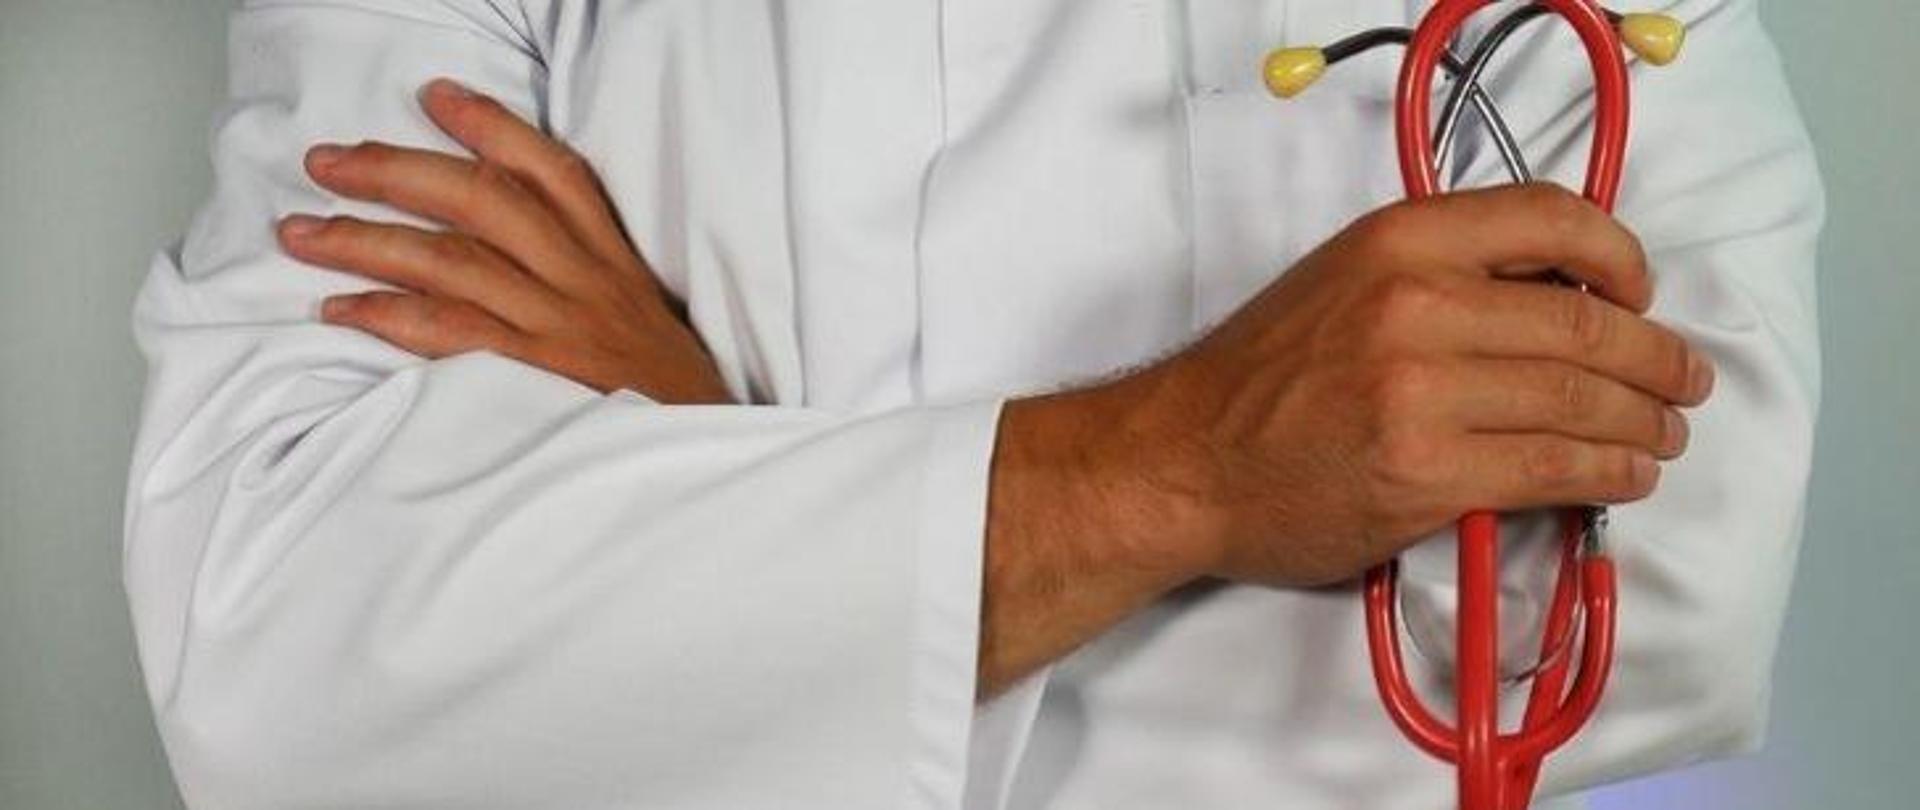 Sylwetka lekarza, najprawdopodobniej mężczyzny, który jest ubrany w biały fartuch medyczny, a w ręce trzyma czerwony stetoskop 